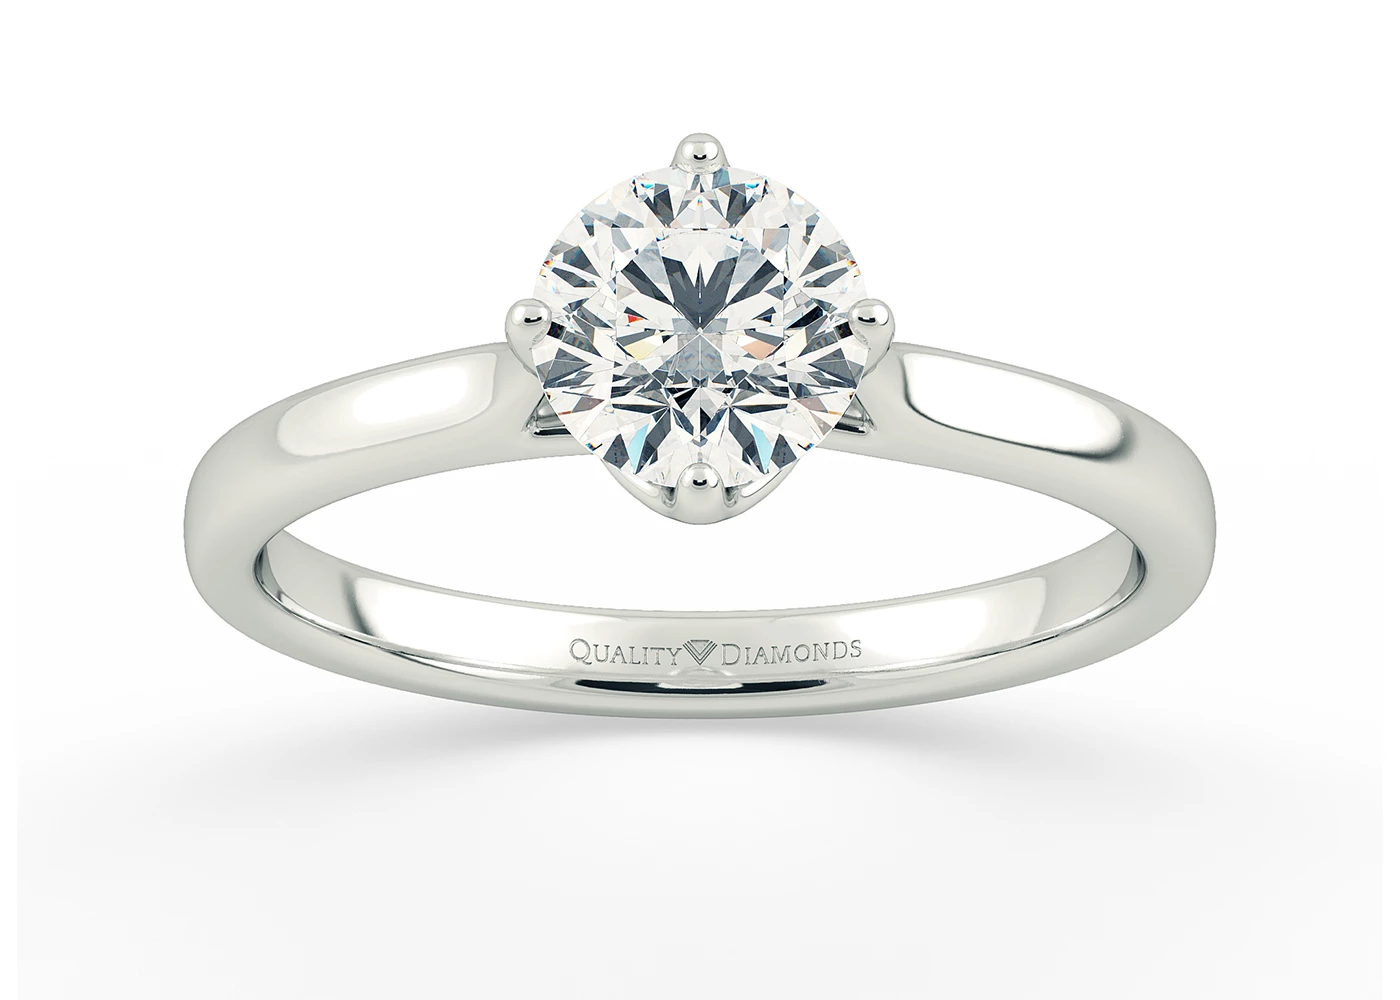 Round Brilliant Promessa Diamond Ring in 18K White Gold